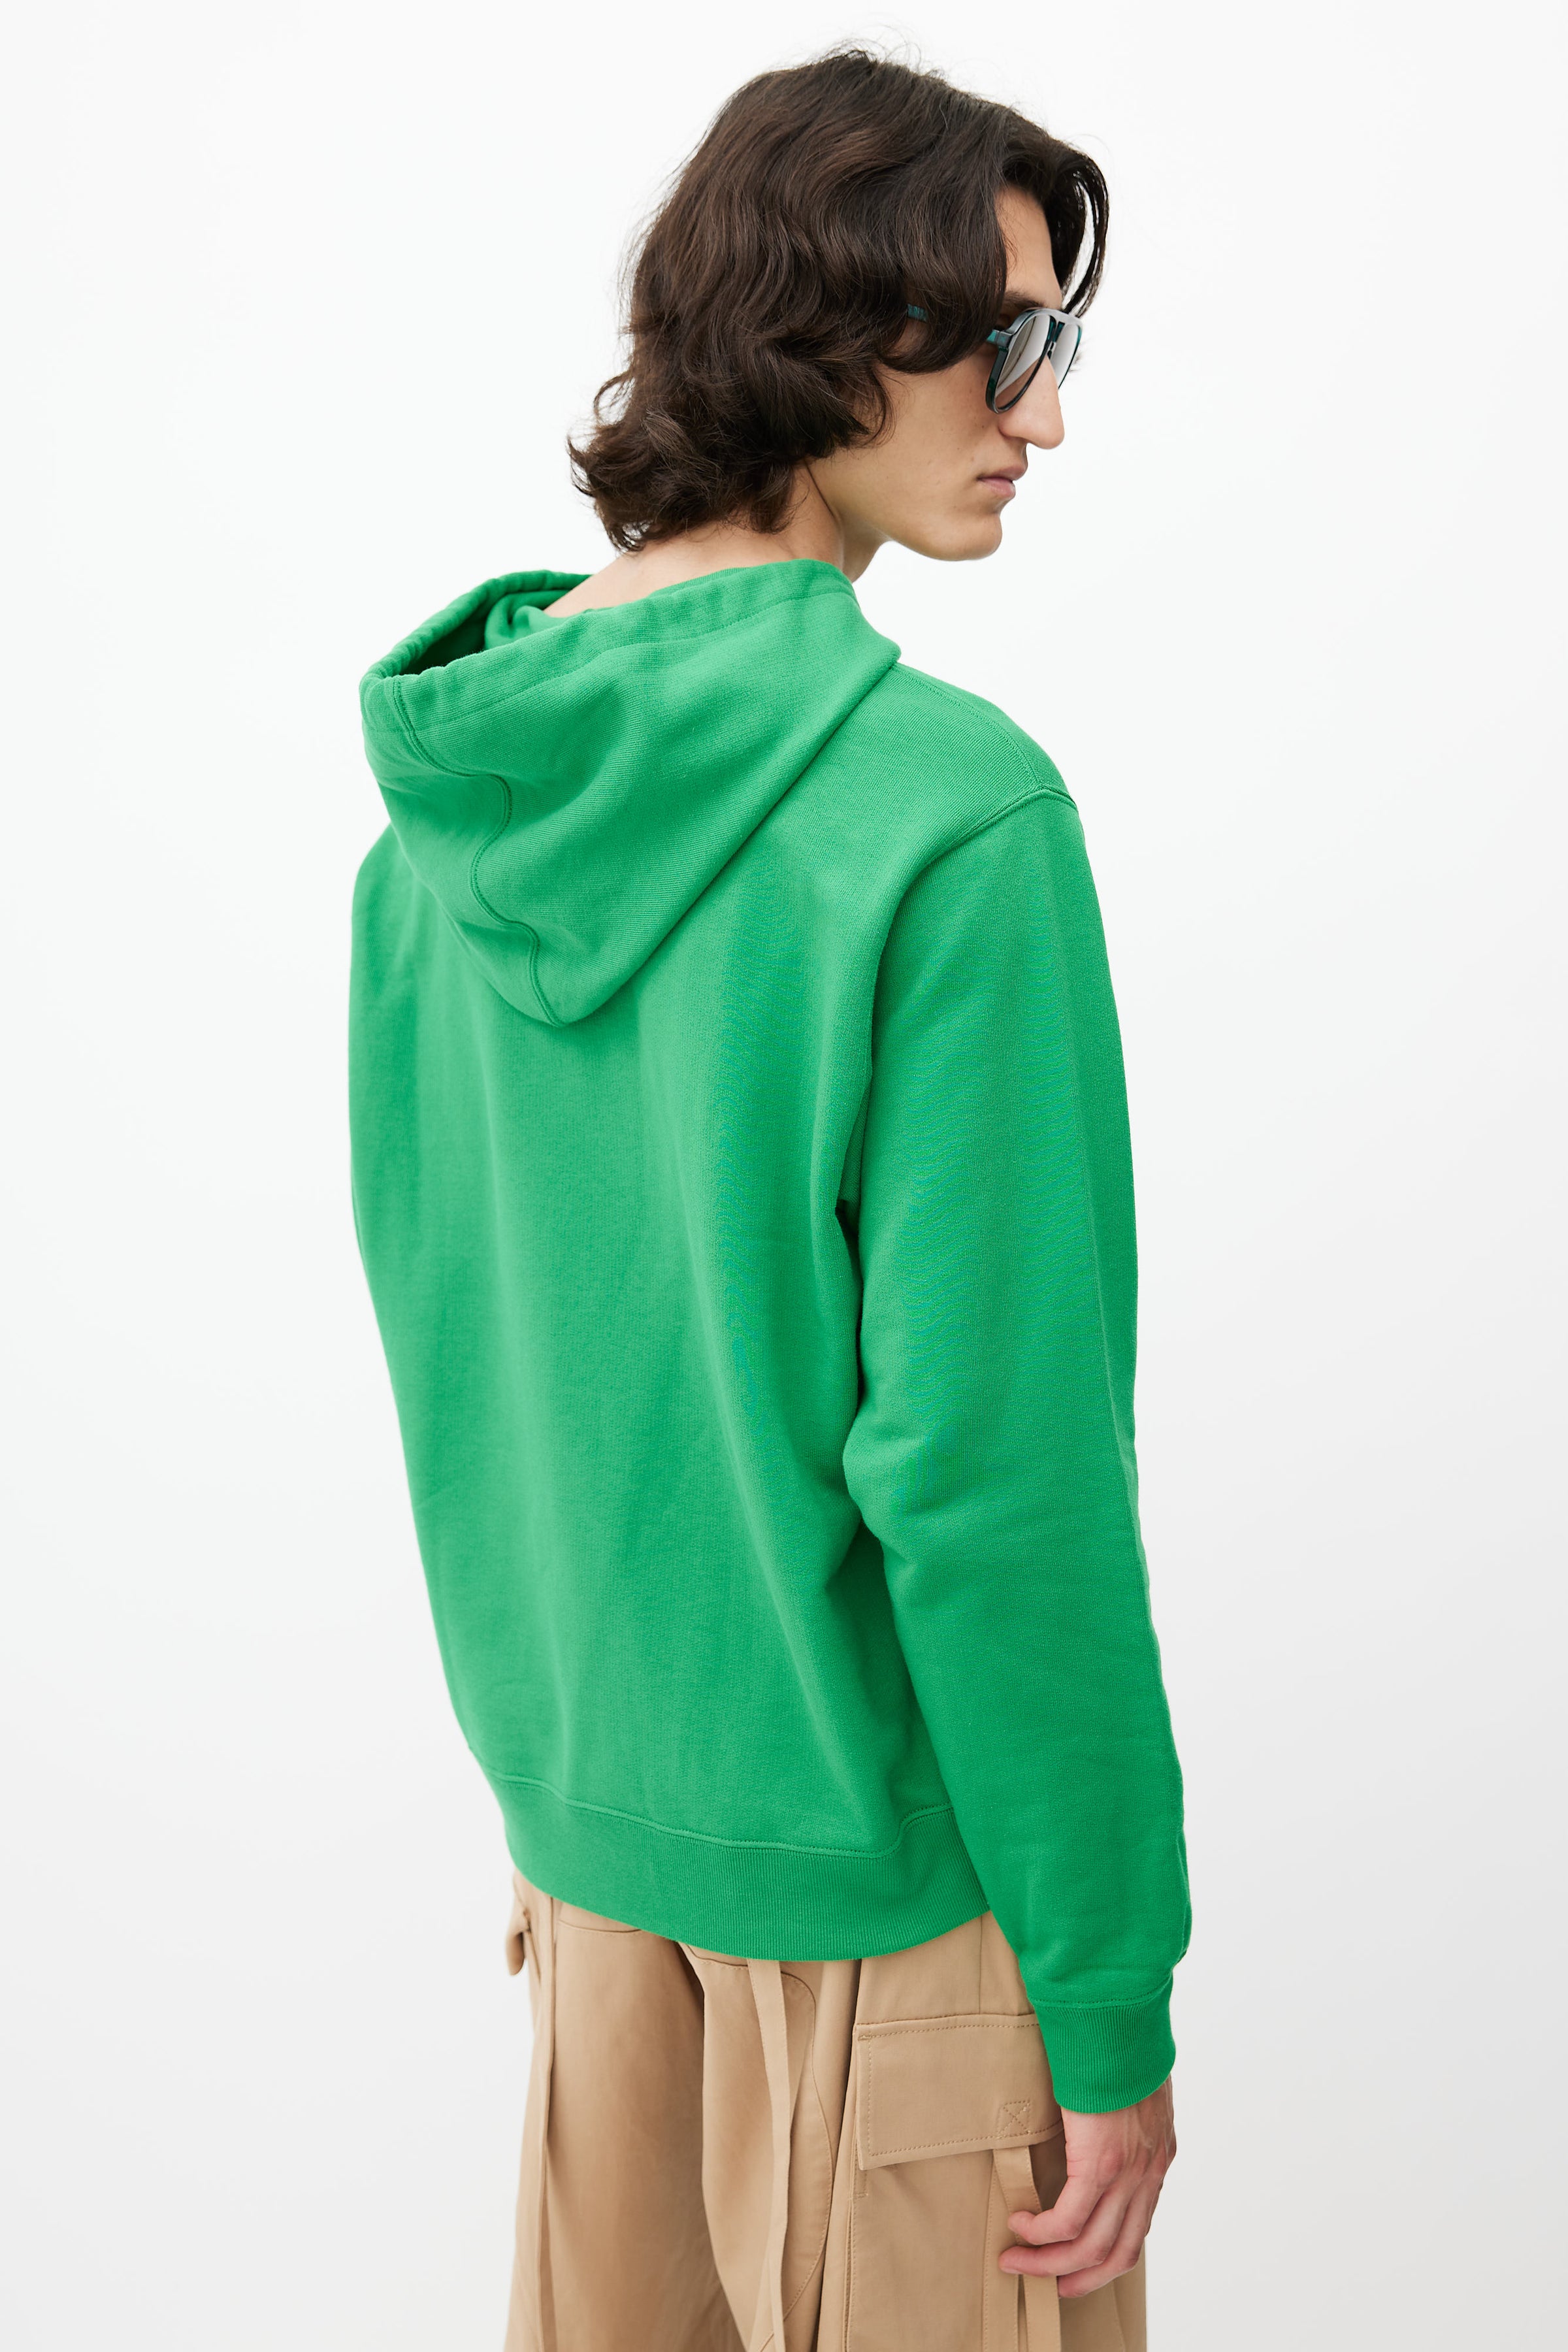 Louis Vuitton - Authenticated Sweatshirt - Cotton Multicolour for Men, Never Worn